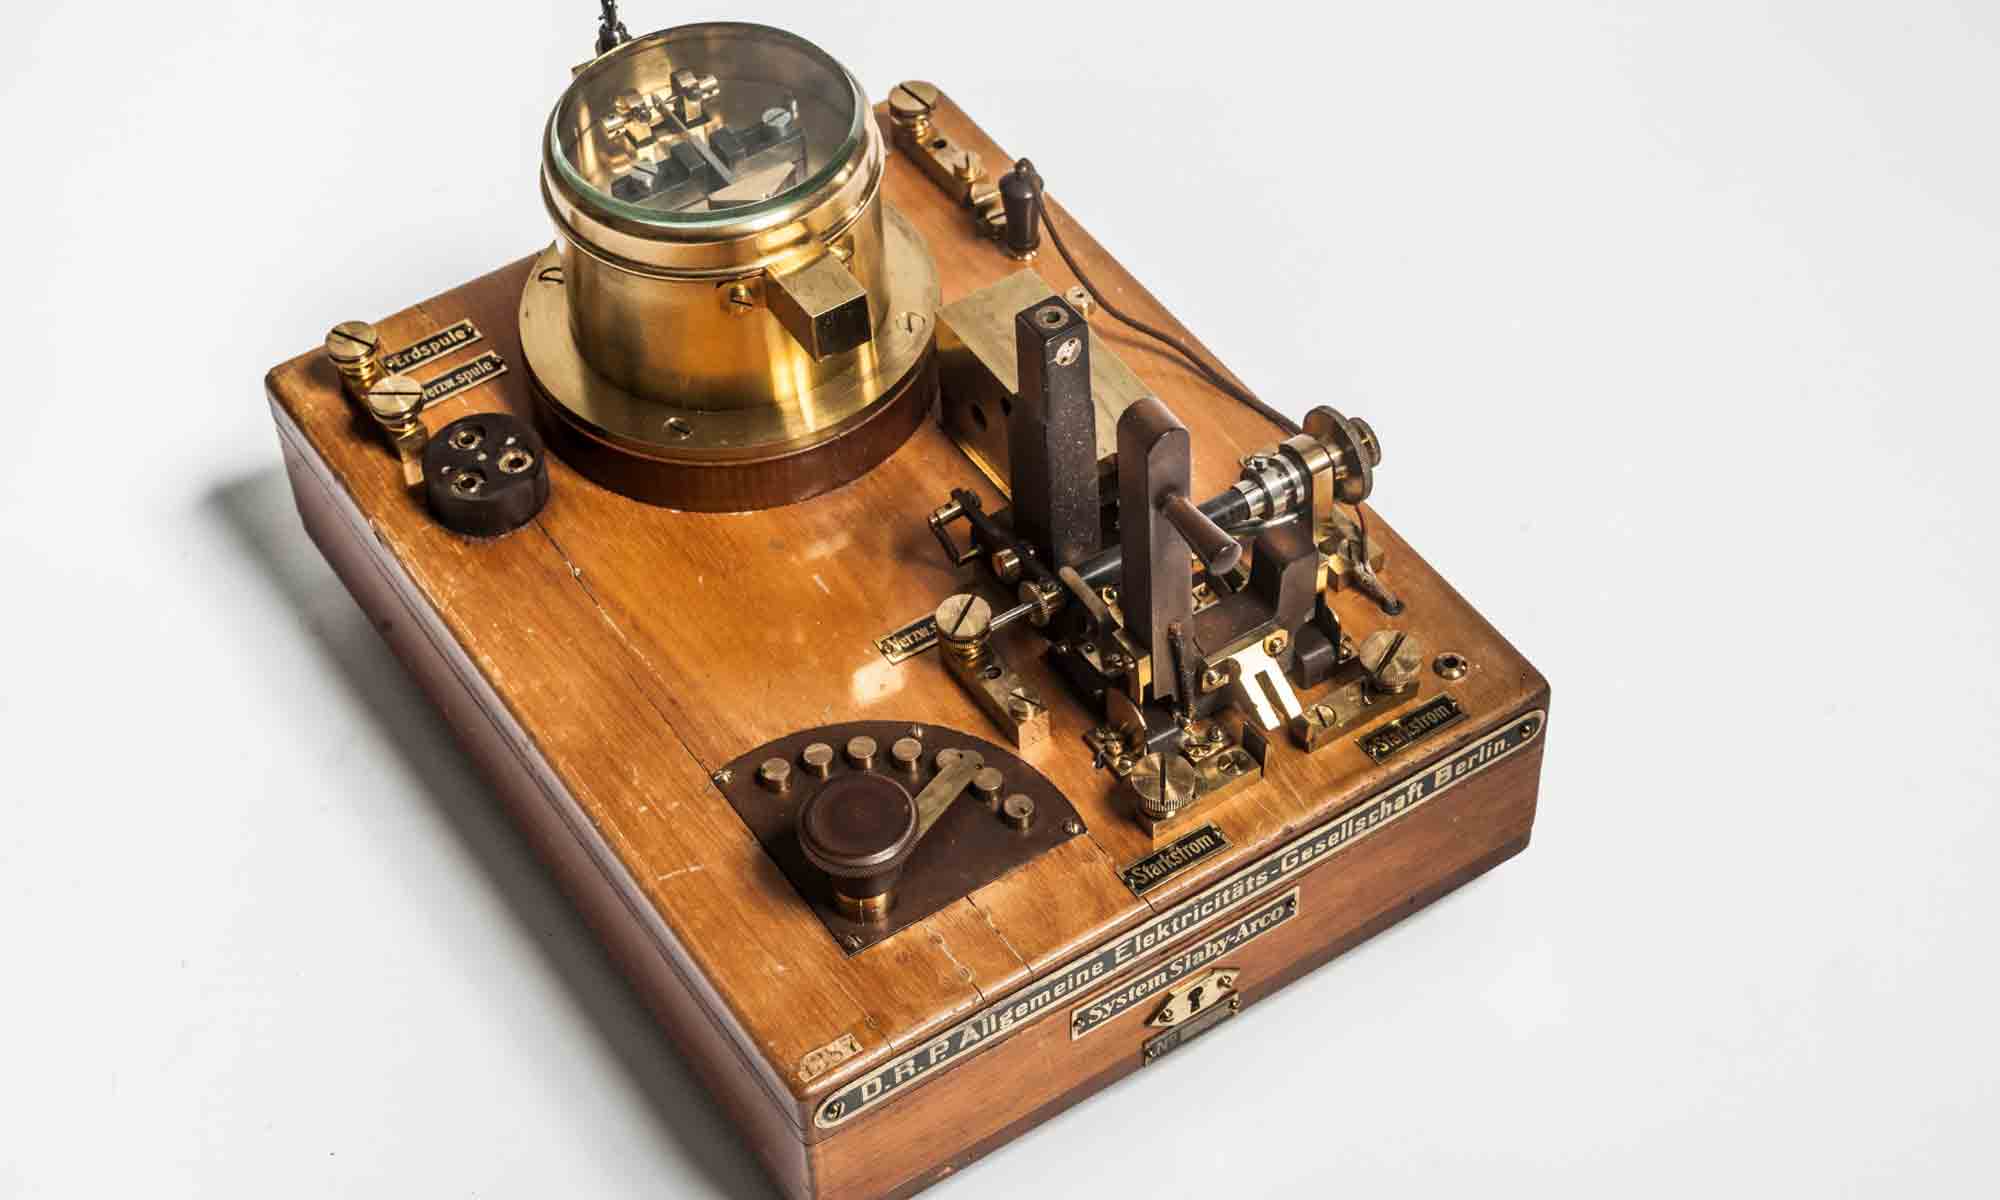 Objekt in der Google Arts and Culture Ausstellung zur Die Erfindung des Funks ein technischer Apparat in Messing auf einem Holzkästchen, Museum für Kommunikation